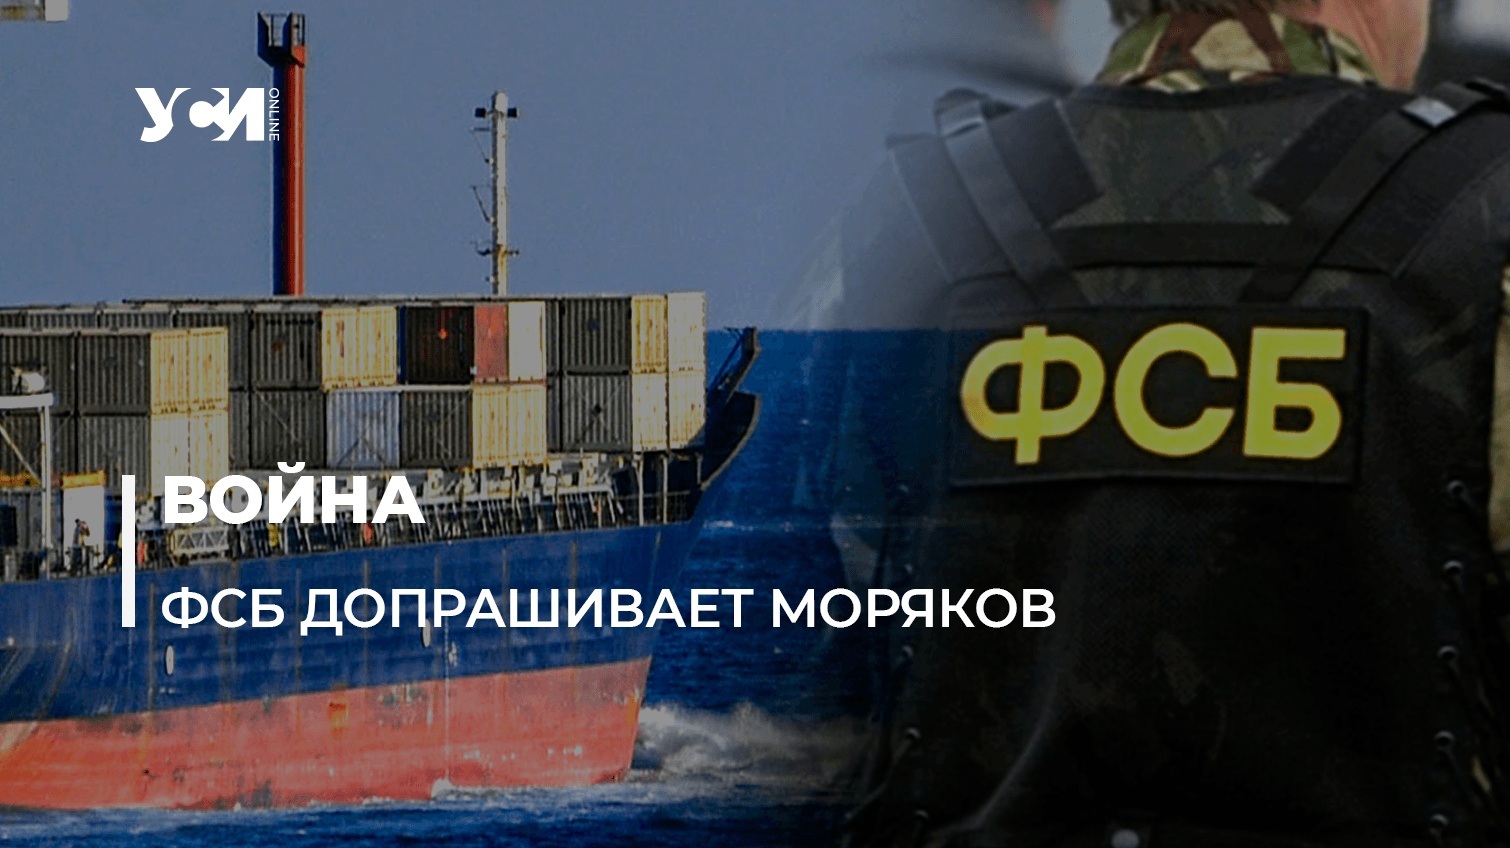 Одесский моряк: в российских портах на торговых судах ФСБ обыскивает и допрашивает украинских моряков «фото»